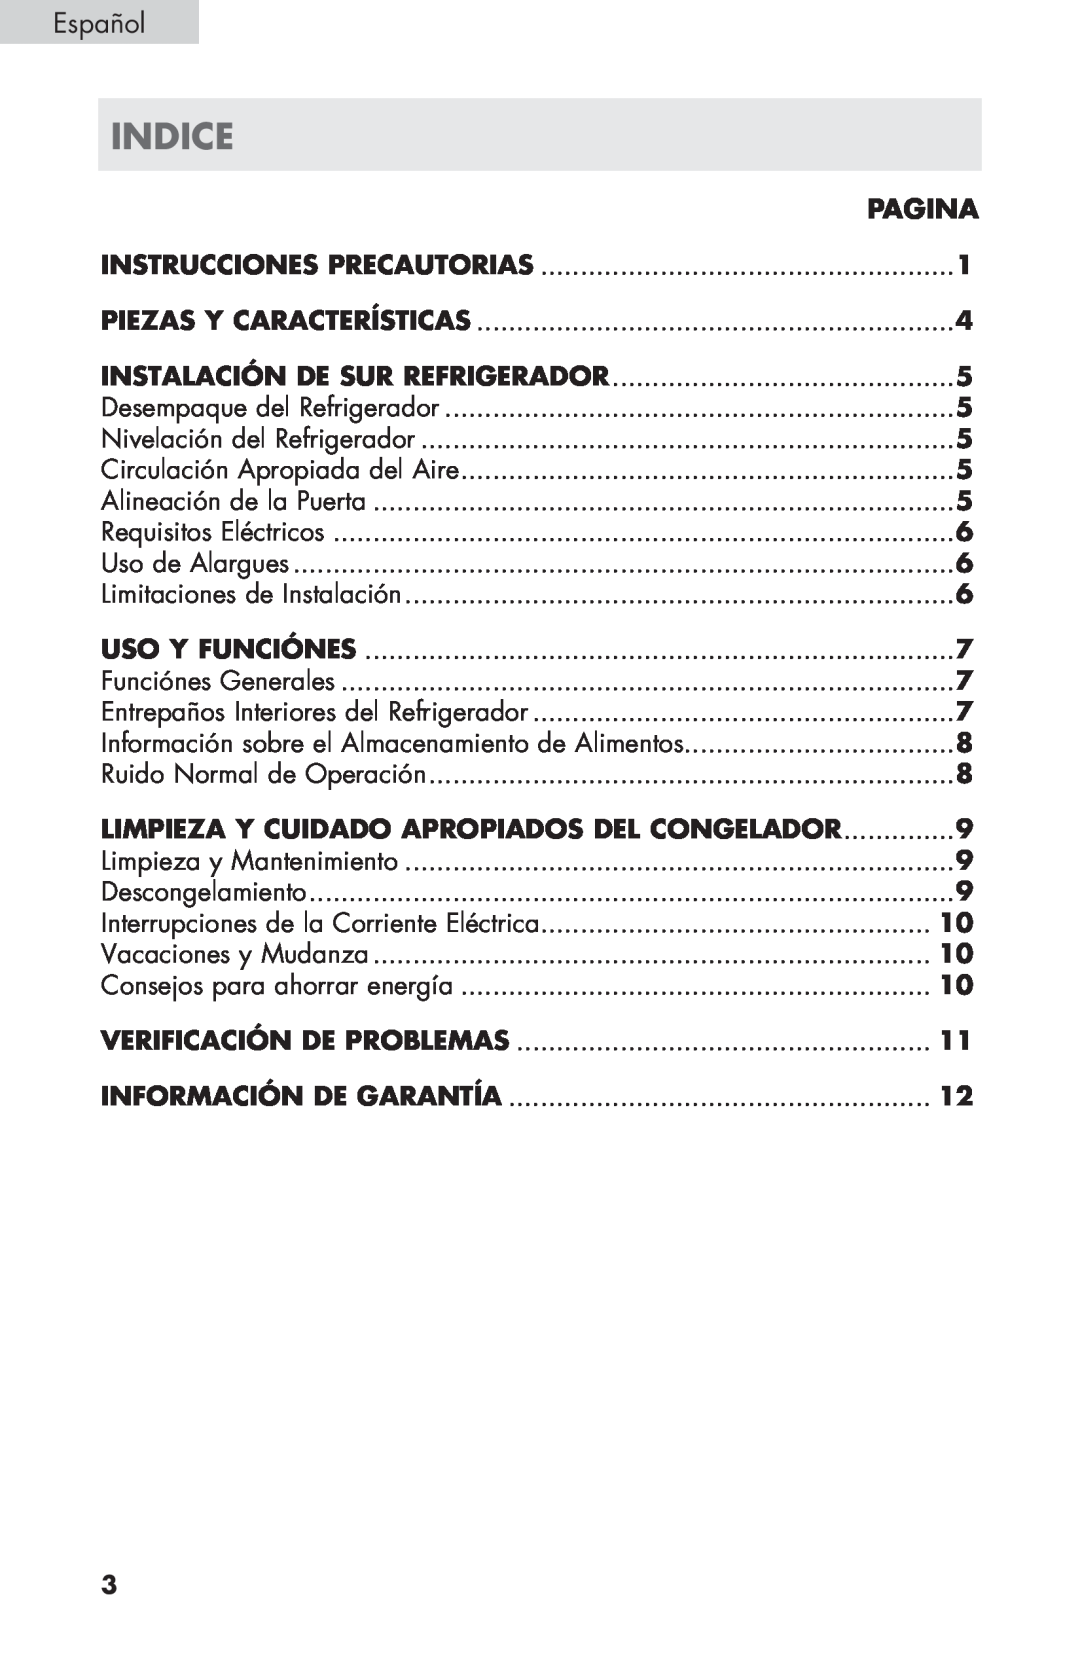 Haier ECR27B indice, Español, Pagina, Instalación de sur Refrigerador, Limpieza y Cuidado Apropiados del Congelador 